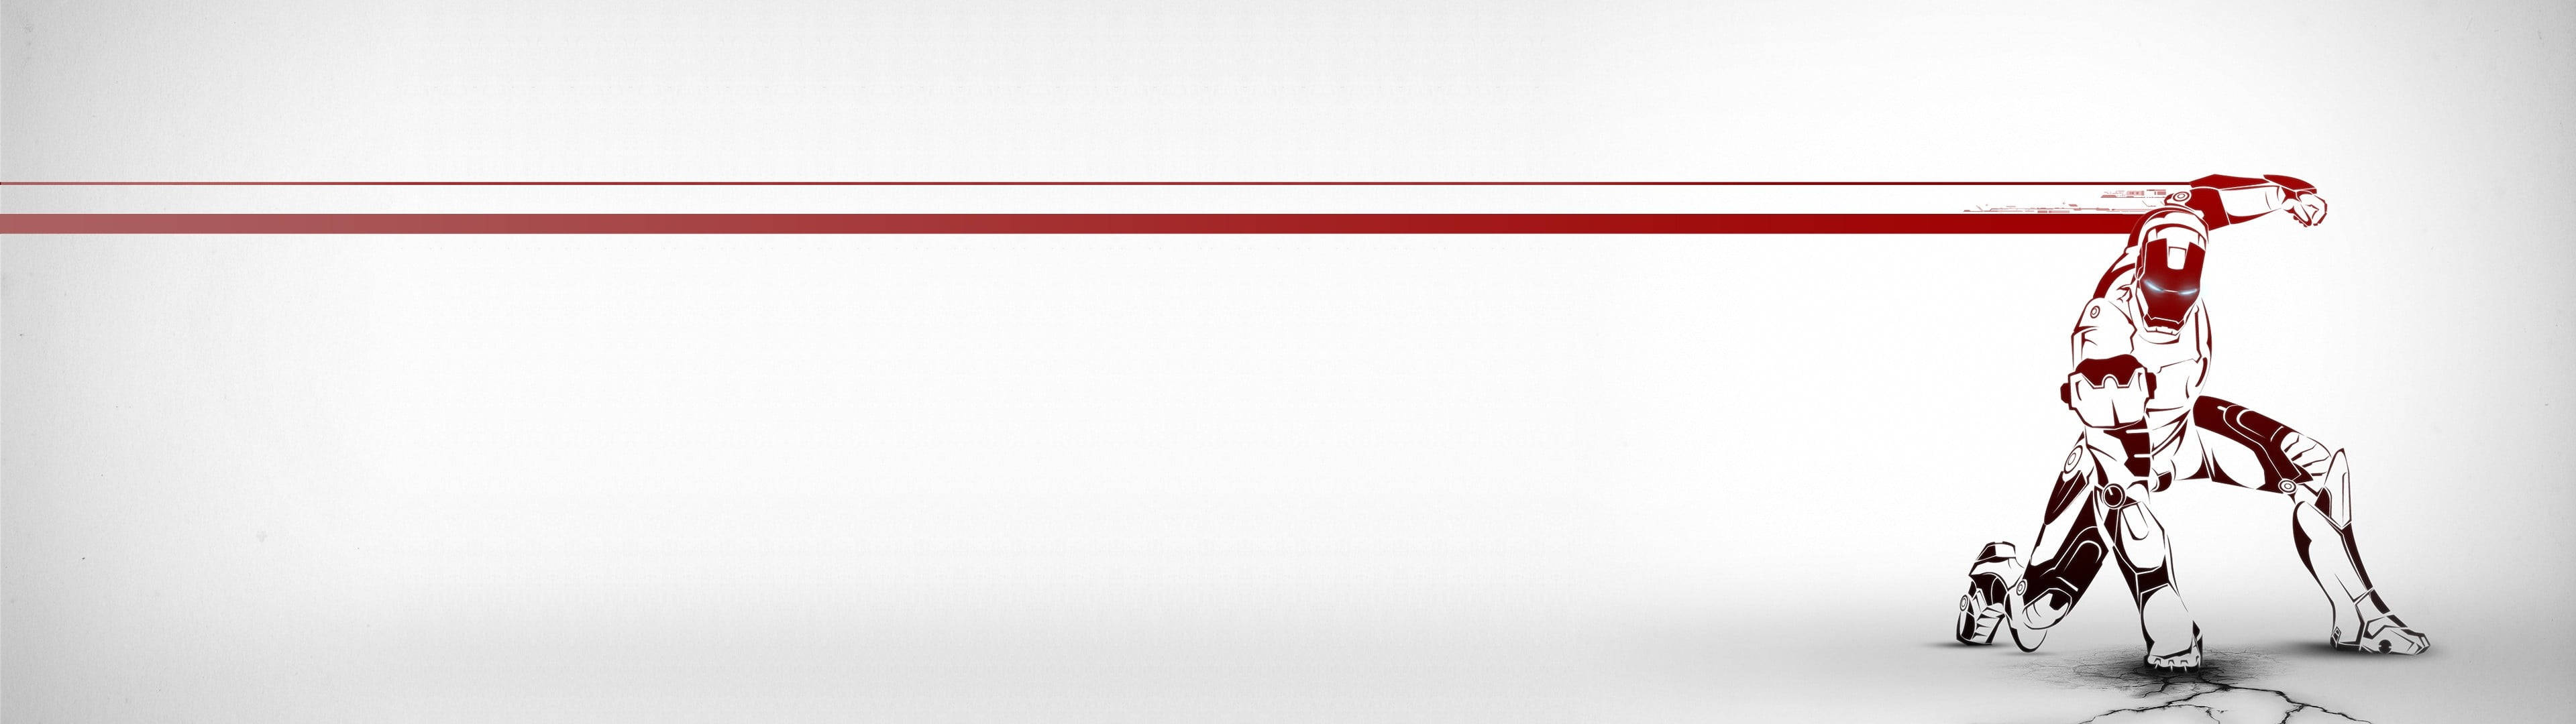 Papelde Parede De Computador Ou Celular: Iron Man Em Vermelho E Branco Em Monitor Duplo 4k Aesthetic. Papel de Parede